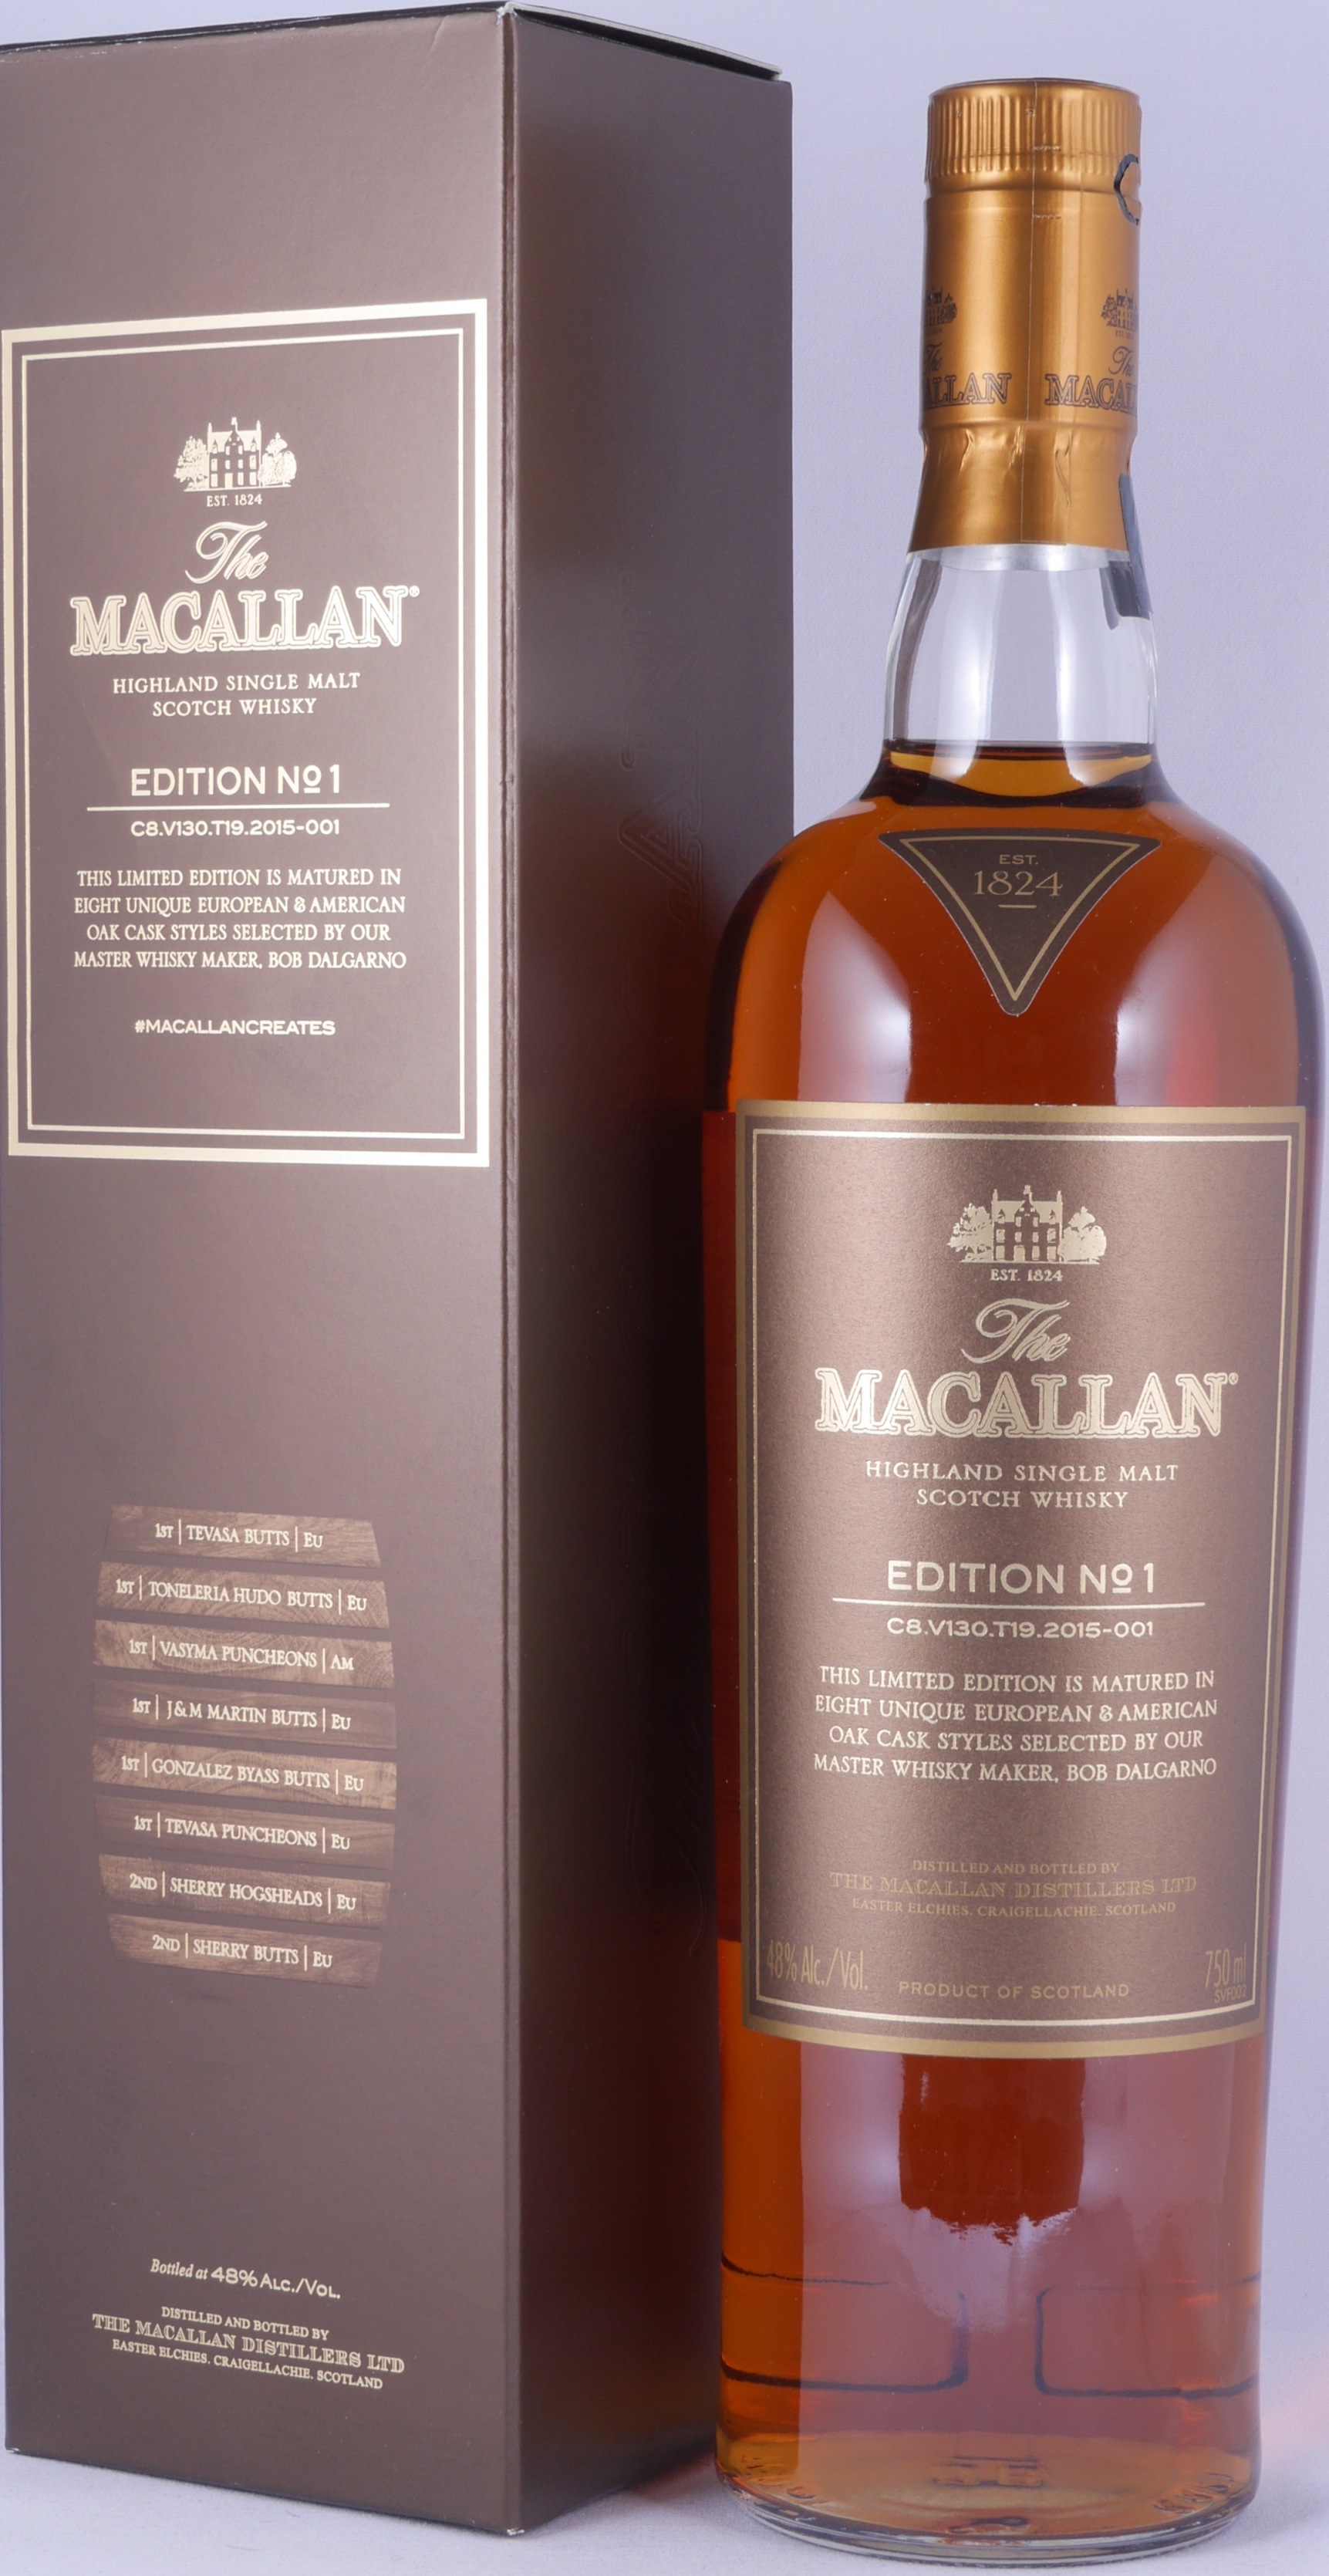 Macallan Edition No 1 Highland Single Malt Scotch Whisky 48 0 Vol Bei Amcom Sicher Online Bestellen